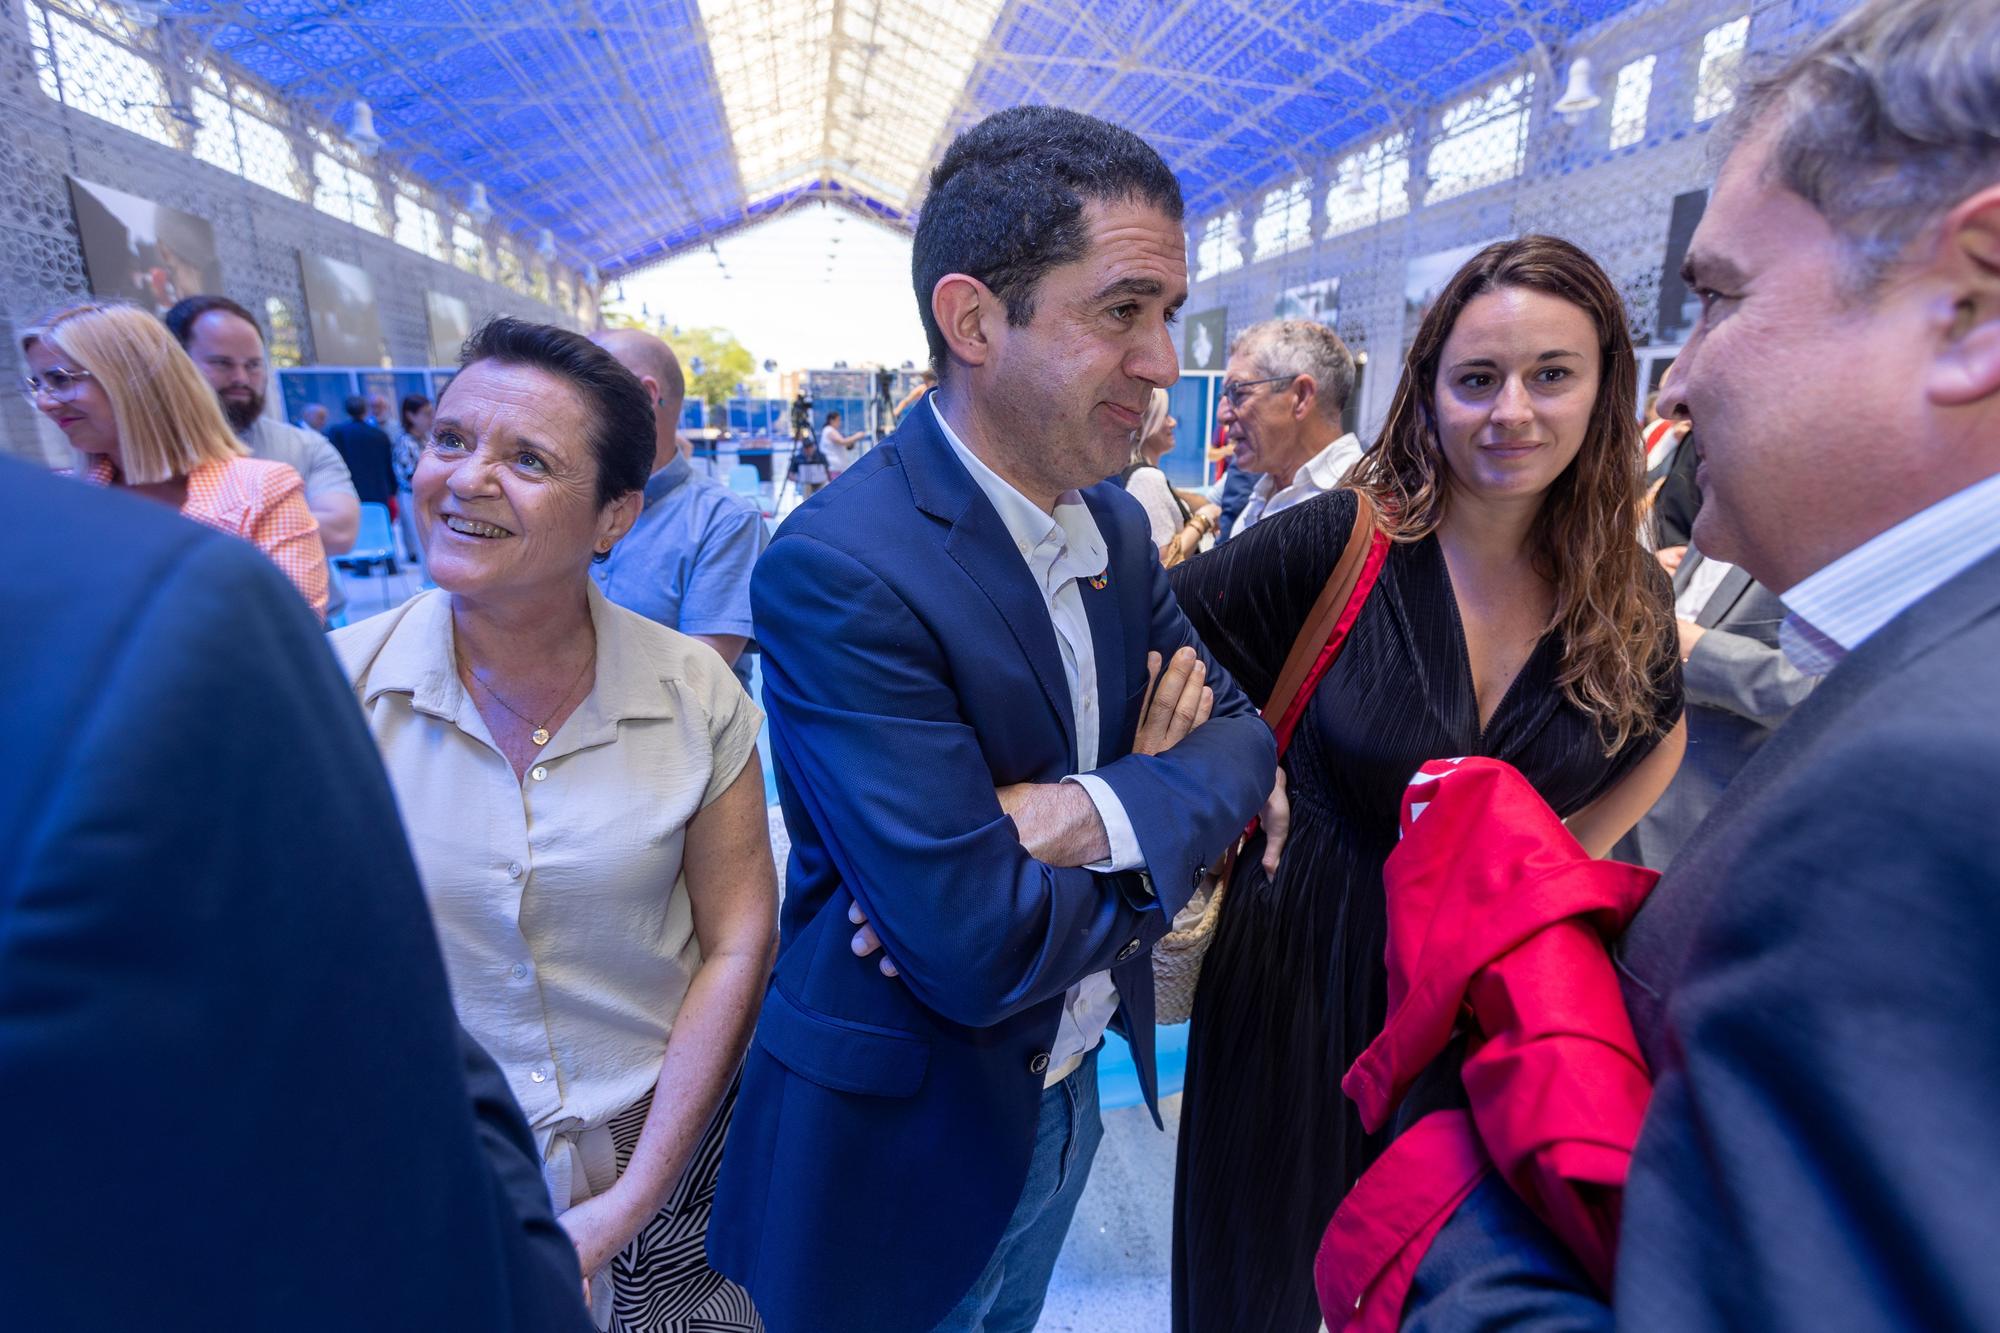 V Congreso de Economía Valenciana en Casa del Mediterráneo